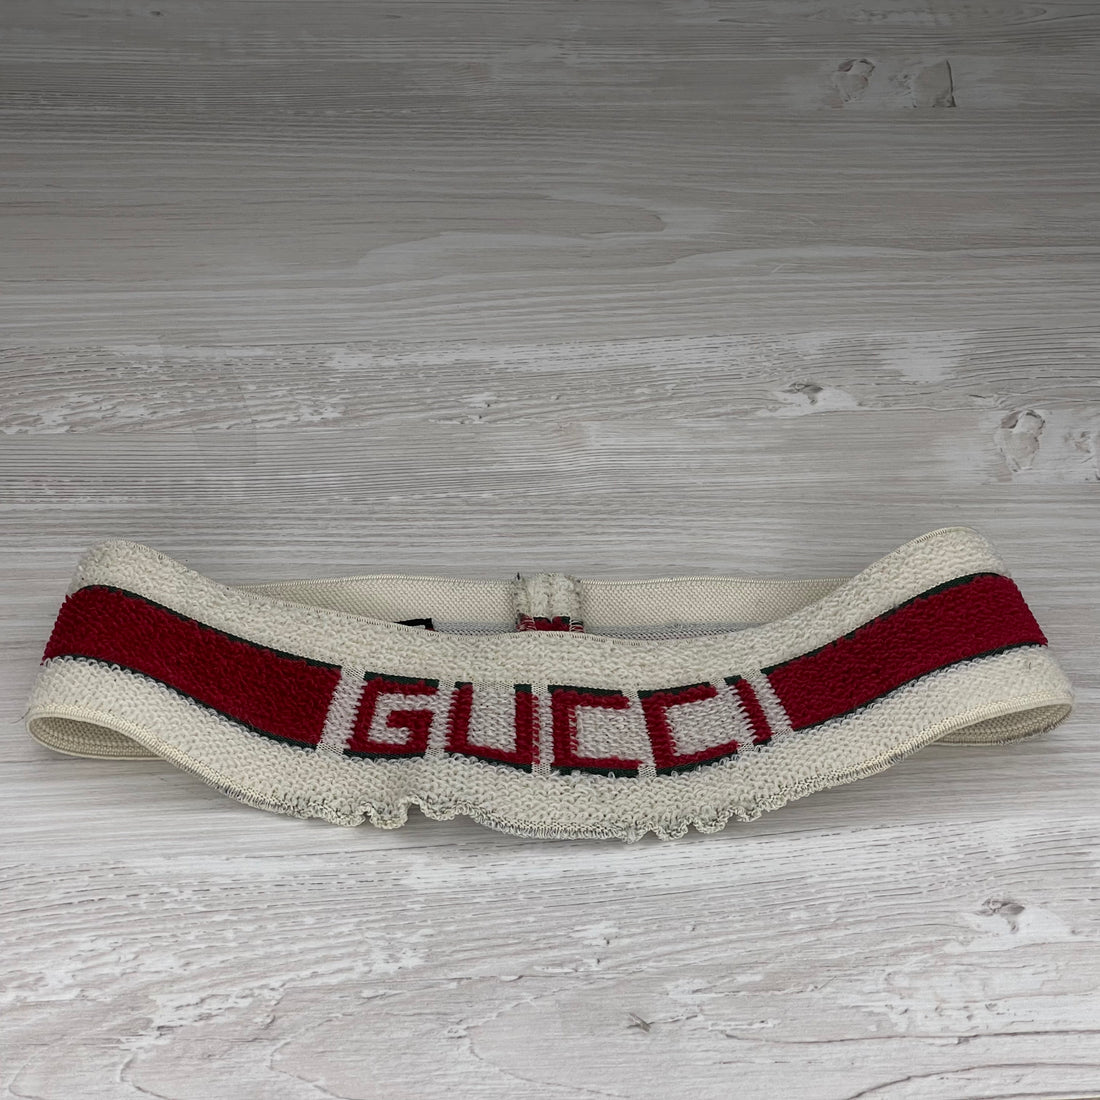 Gucci Hårbånd, Elastisk Gucci Stripe Detail 2 (Onesize) 🥎